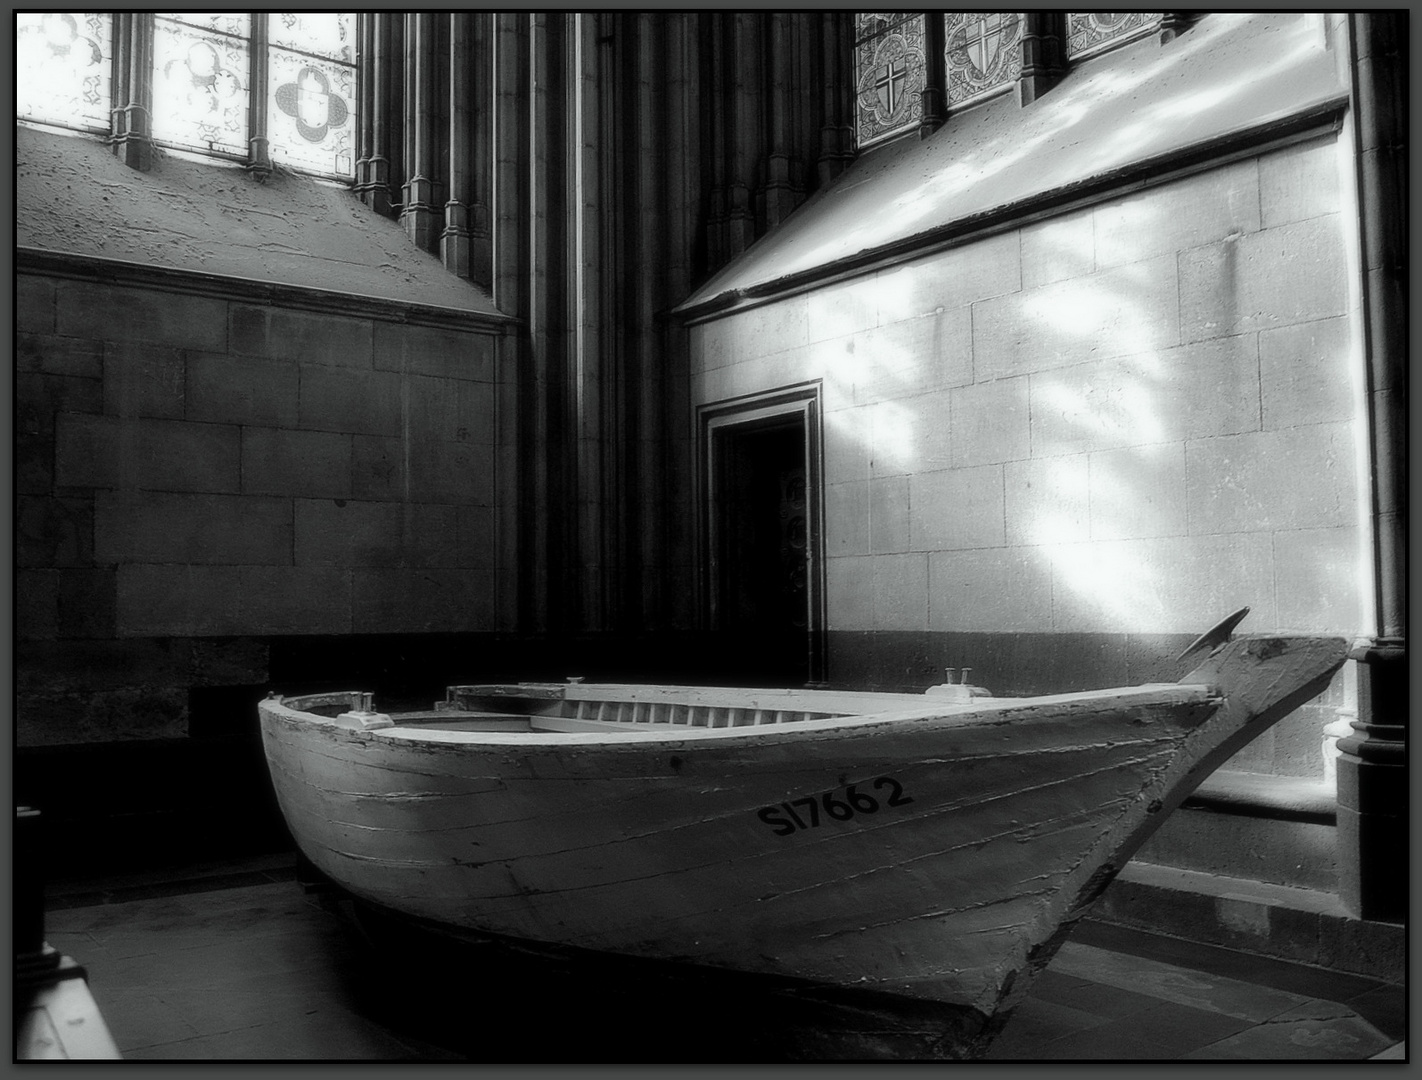 Flüchtlingsboot im Kölner Dom....Refugee's boat in the Cologne Cathedral